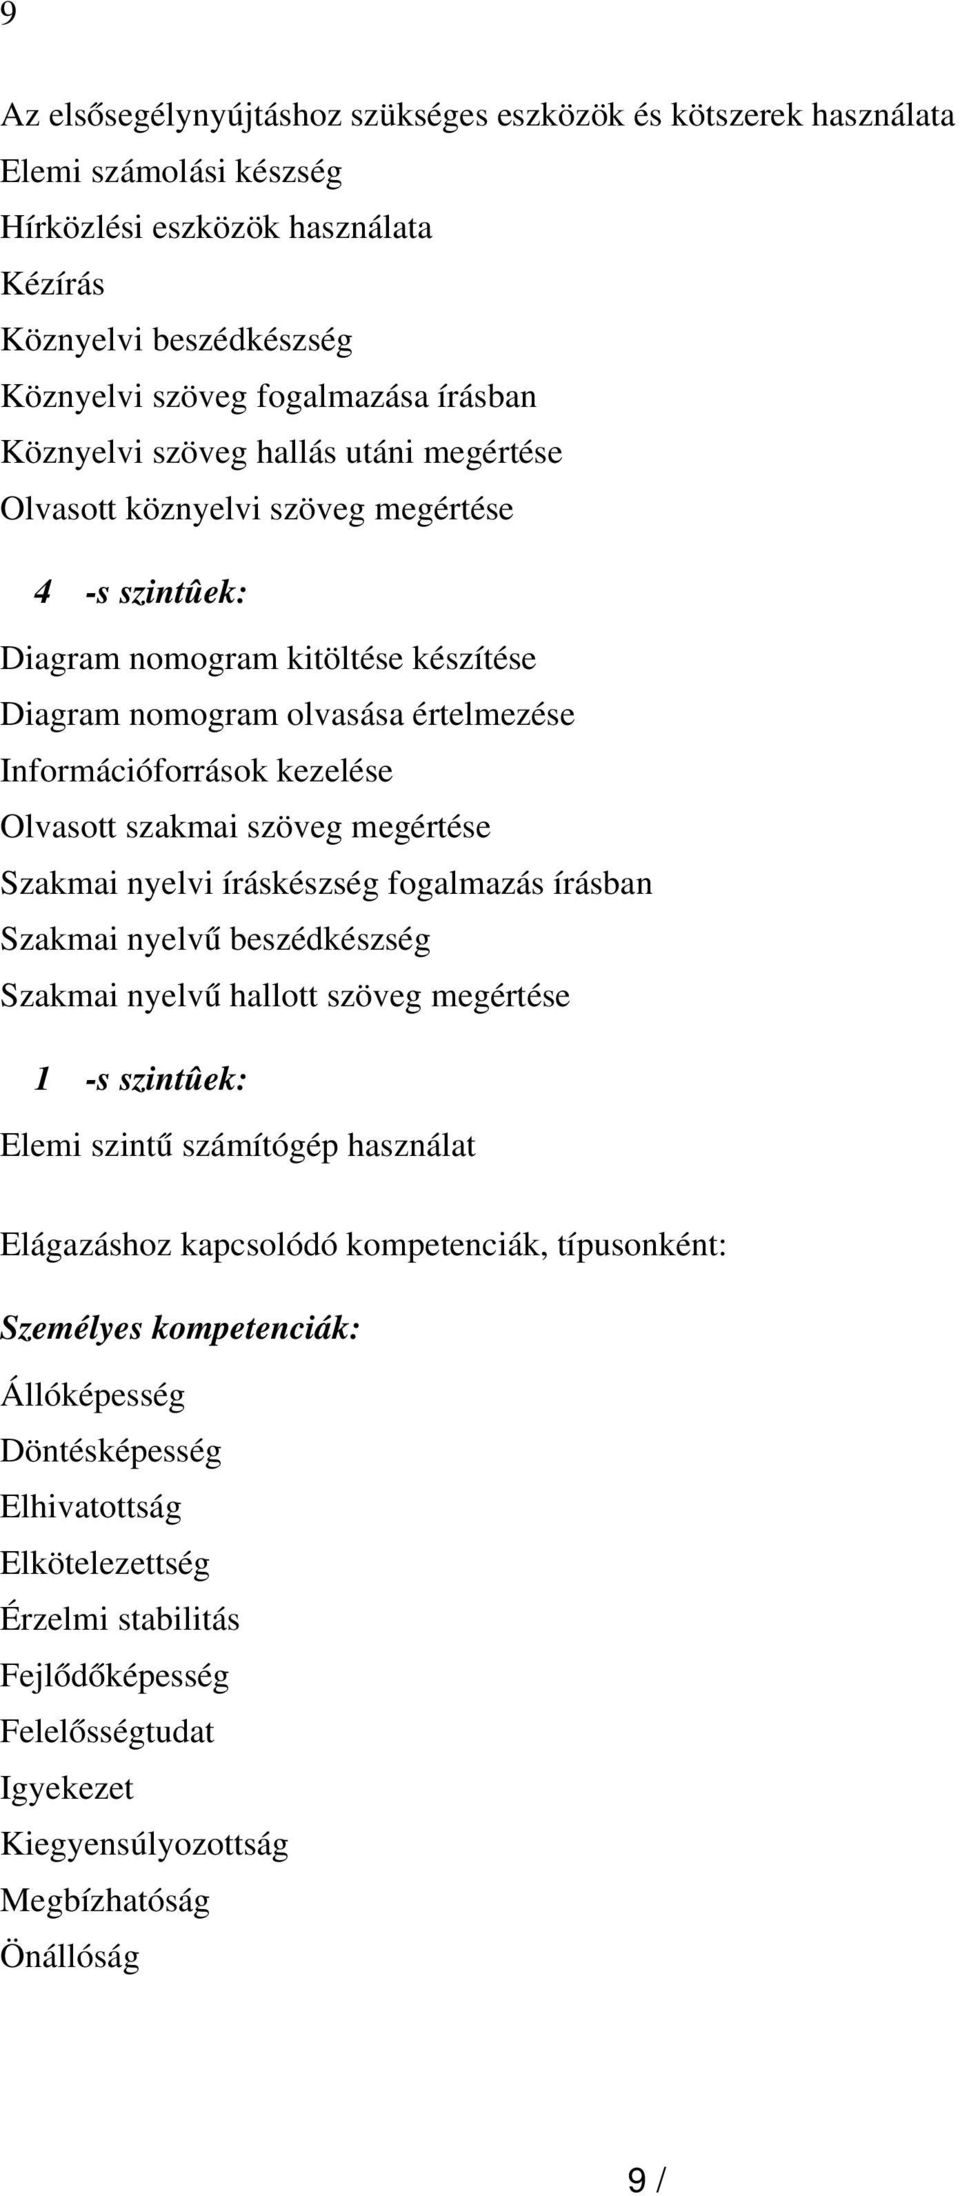 Olvasott szakmai szöveg megértése Szakmai nyelvi íráskészség fogalmazás írásban Szakmai nyelv ű beszédkészség Szakmai nyelv ű hallott szöveg megértése 1 -s szintûek: Elemi szint ű számítógép